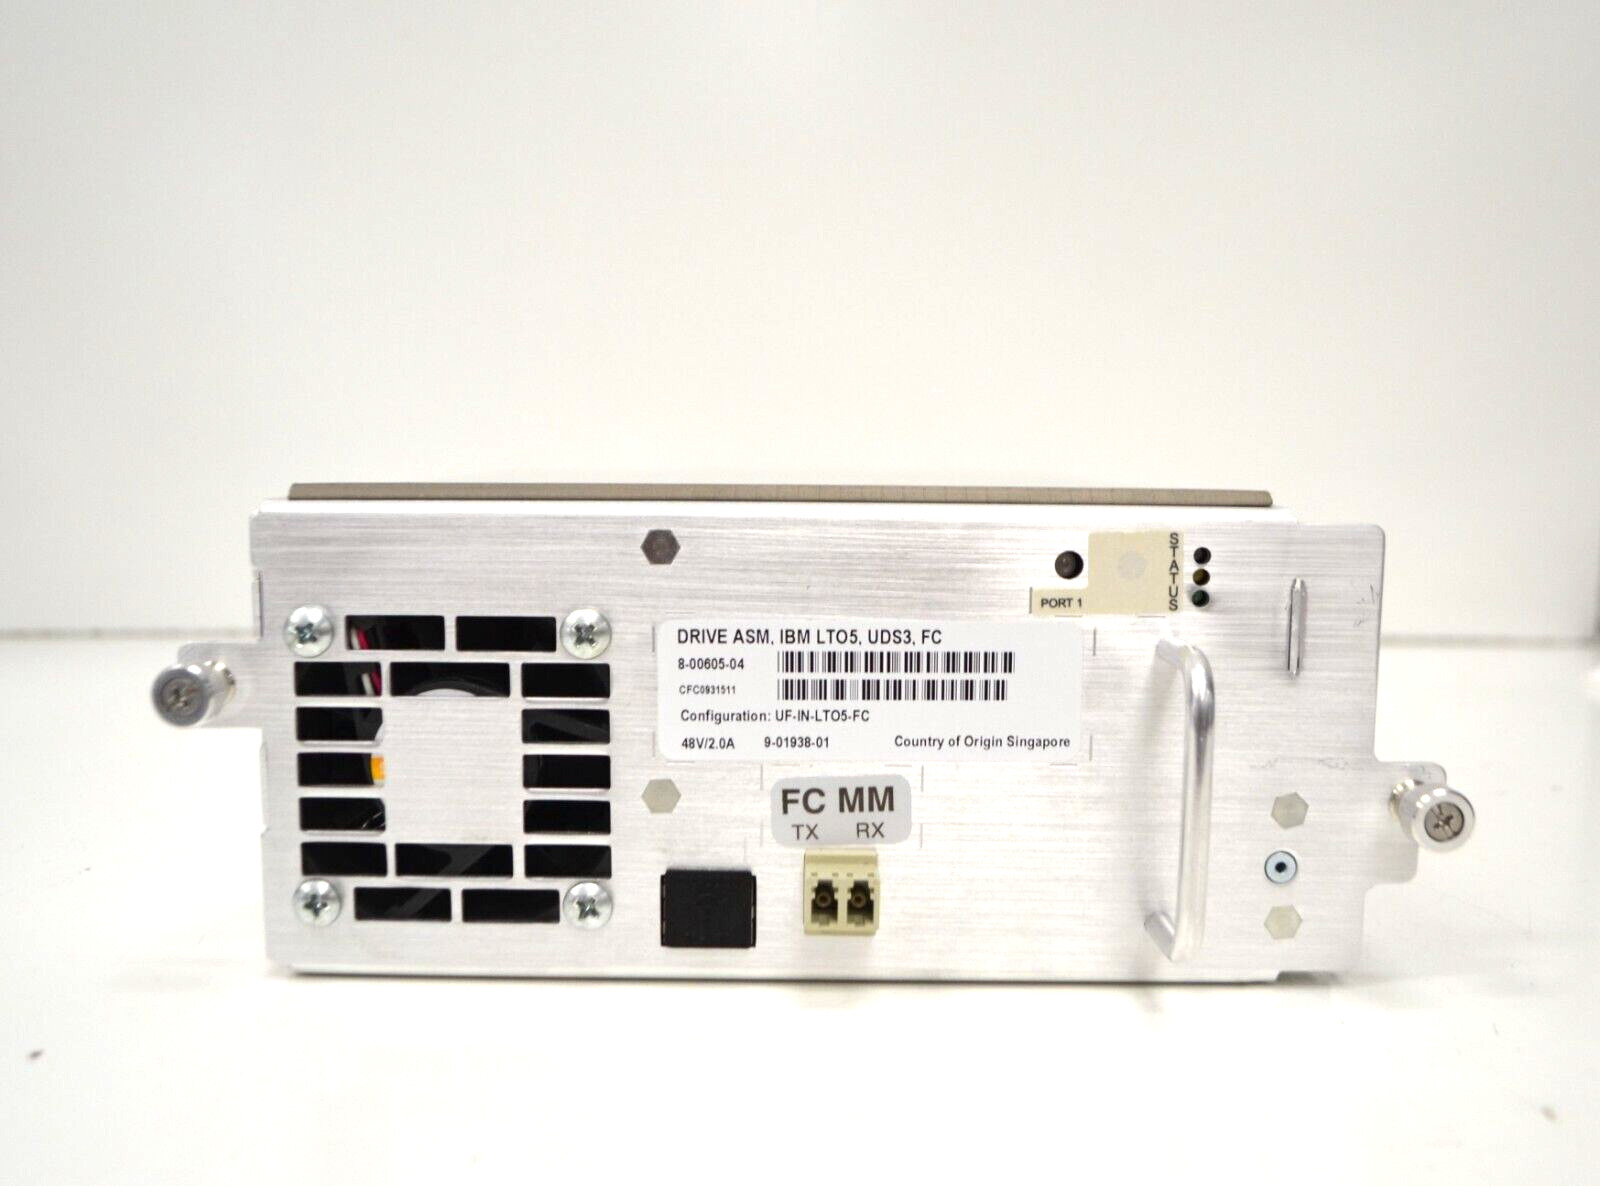 IBM UF-IN-LTO5-FC/LTO5/UDS3 Tape Drive 8-00605-04 for Quantum Scalar i6000